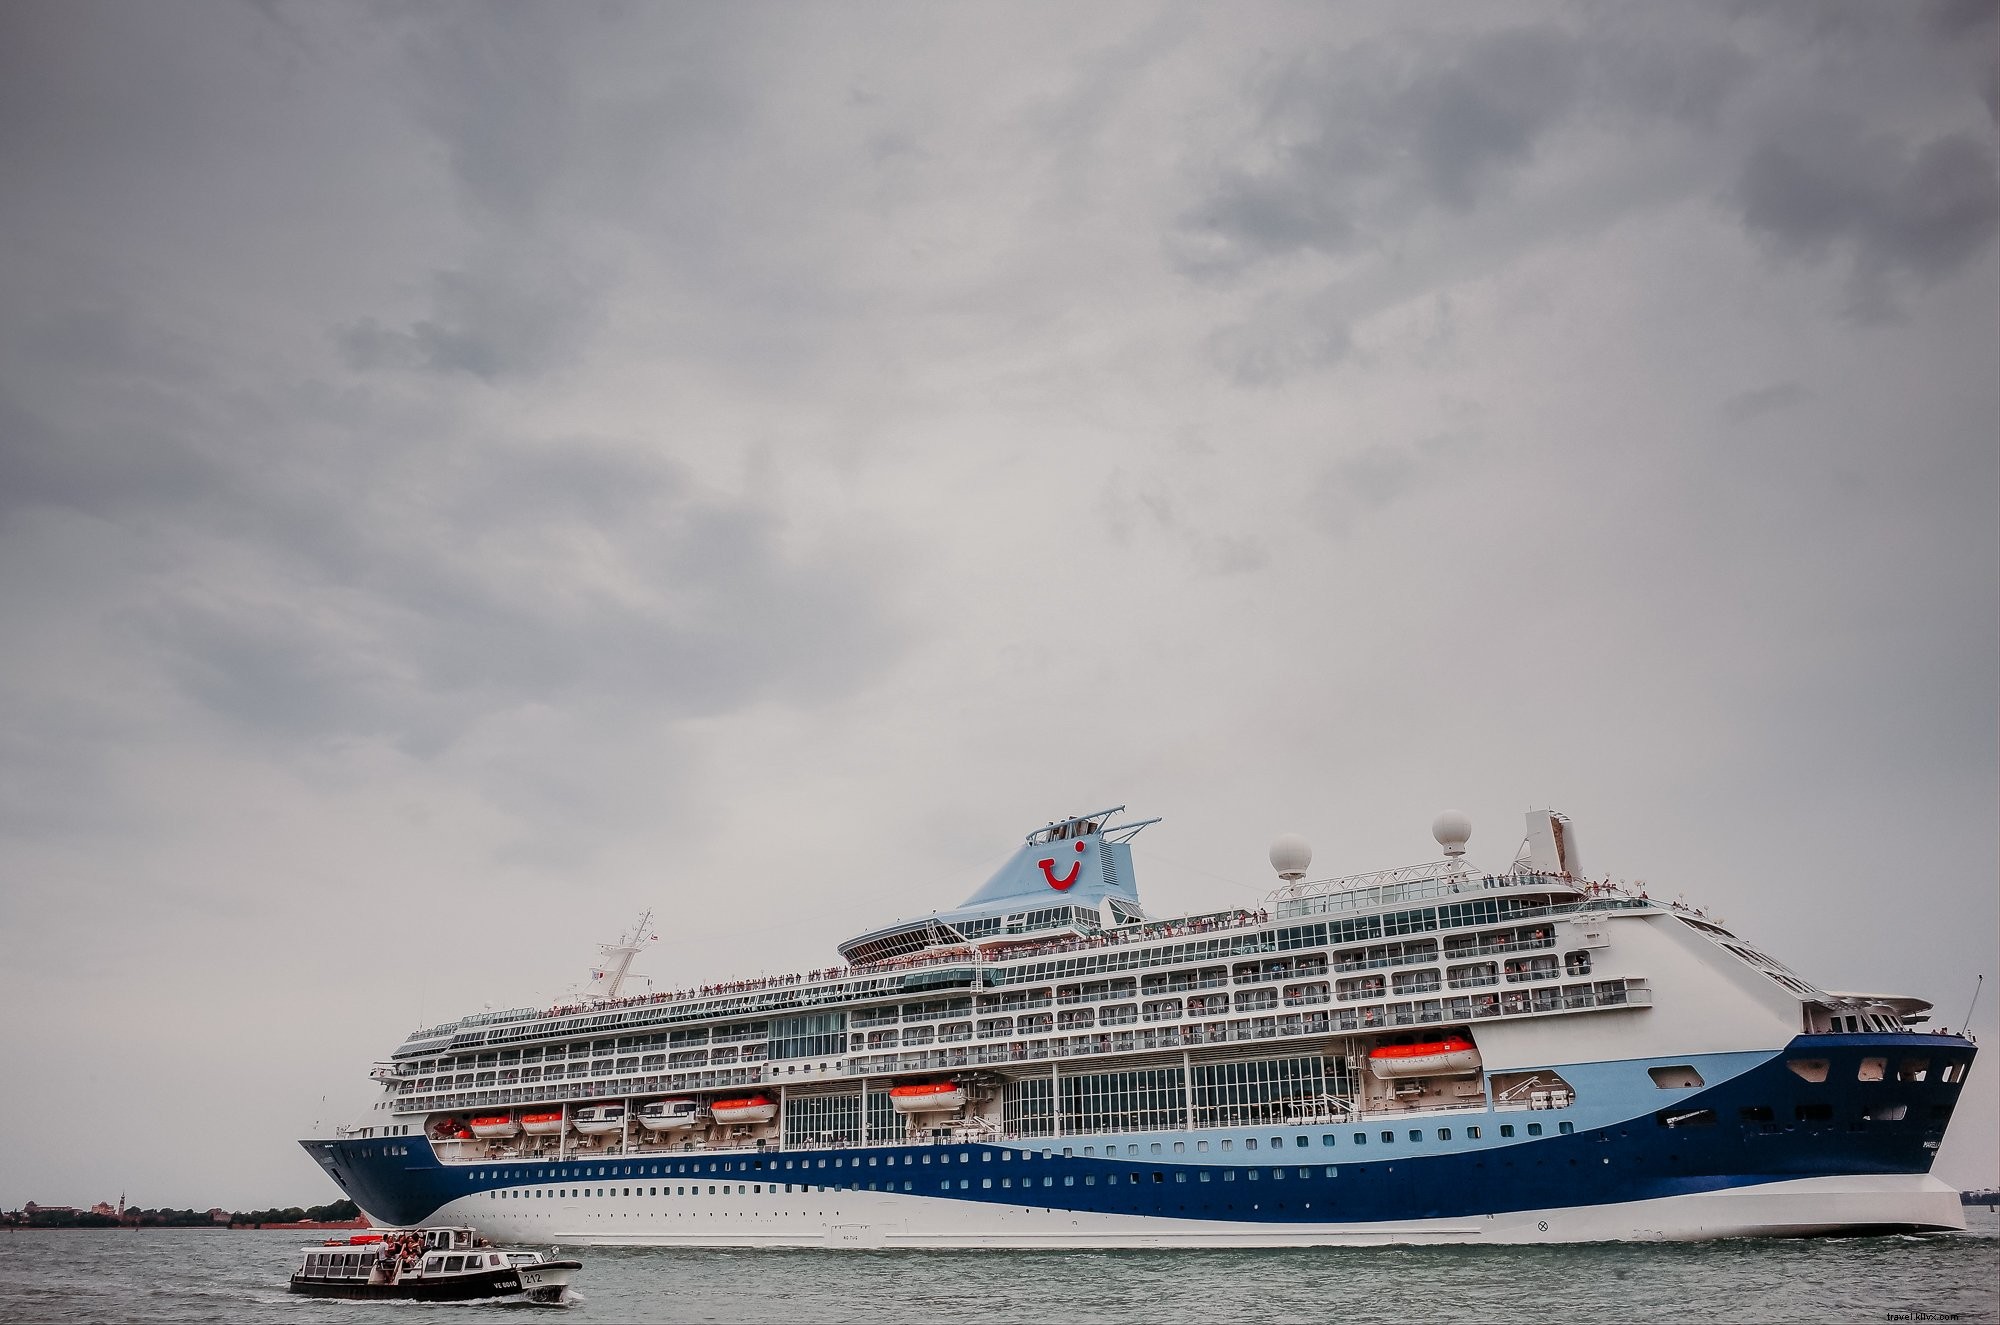 Foto de grande navio de cruzeiro branco e azul em um dia nublado 